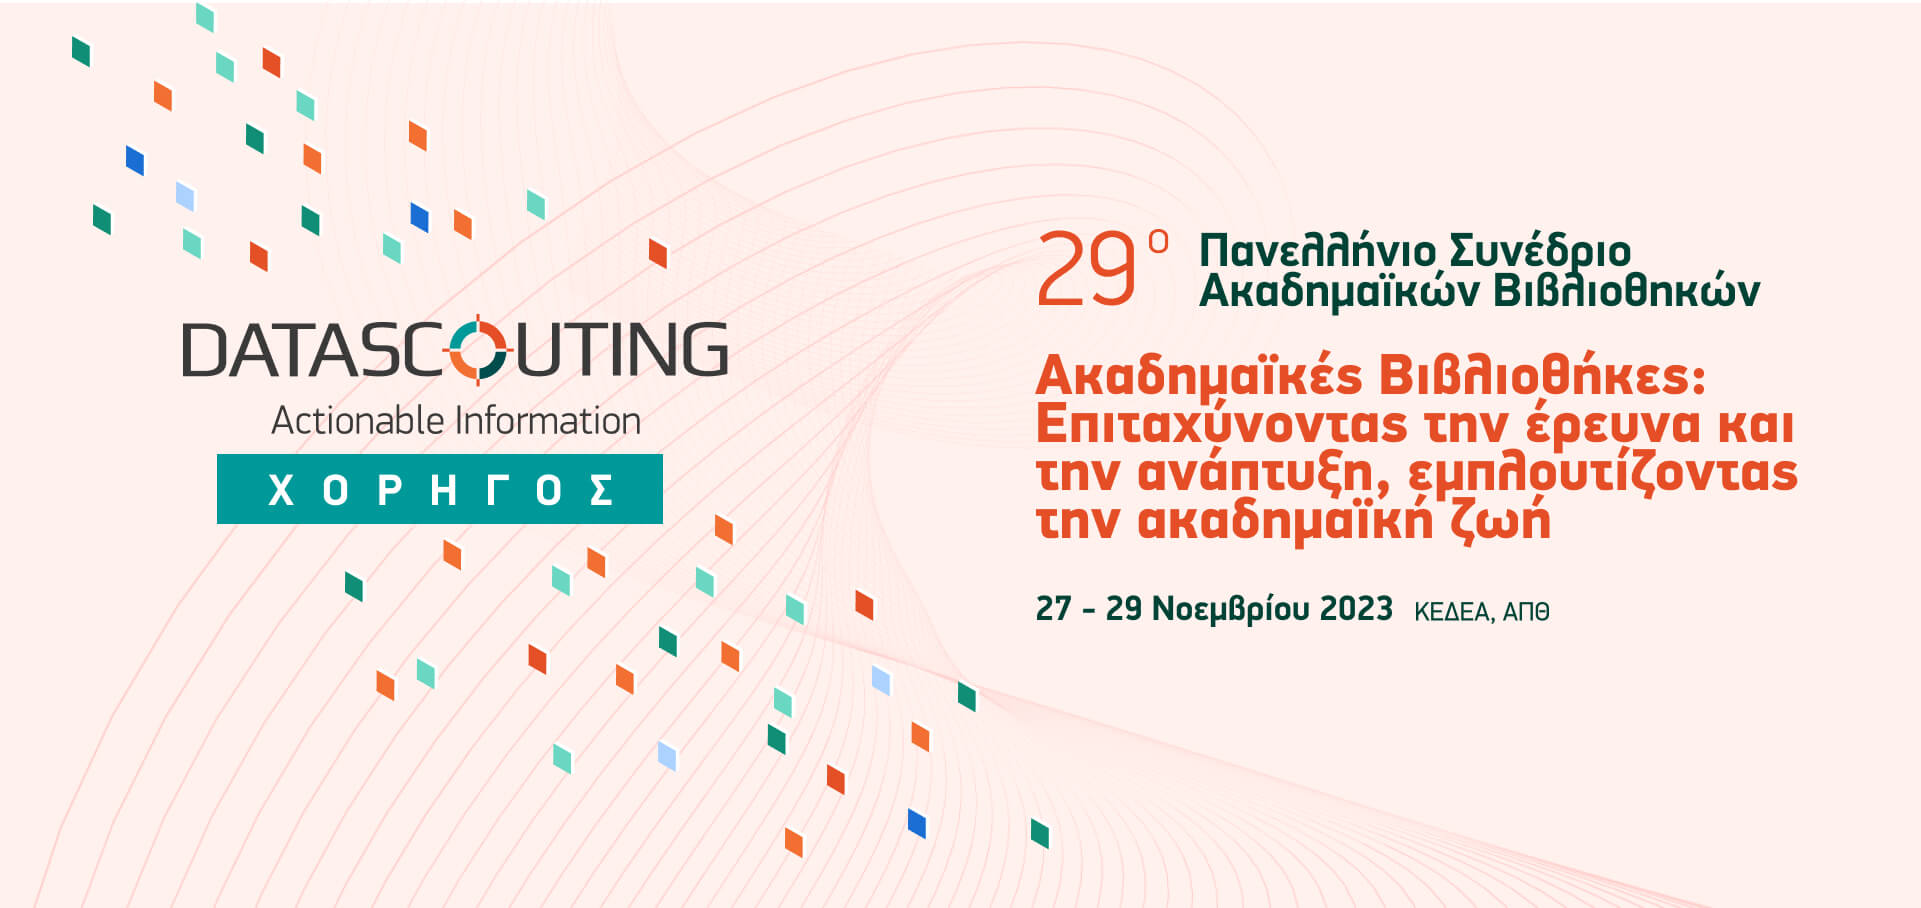 29ο Πανελλήνιο Συνέδριο Ακαδημαϊκών Βιβλιοθηκών | Χορηγός του 29ου Πανελλήνιου Συνεδρίου Ακαδημαϊκών Βιβλιοθηκών